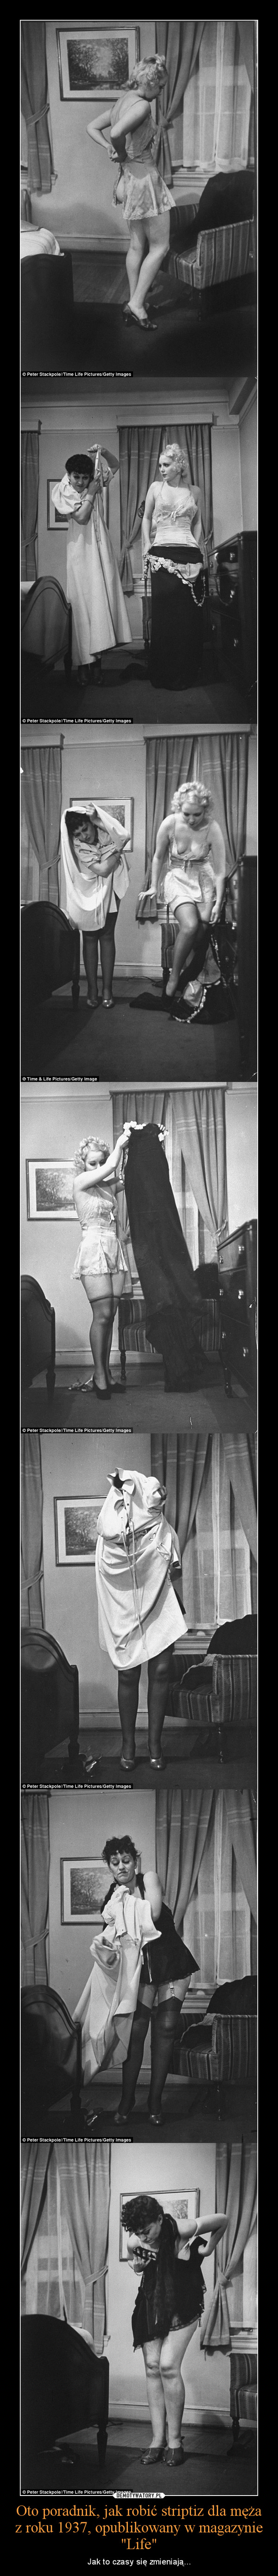 Oto poradnik, jak robić striptiz dla męża z roku 1937, opublikowany w magazynie "Life"